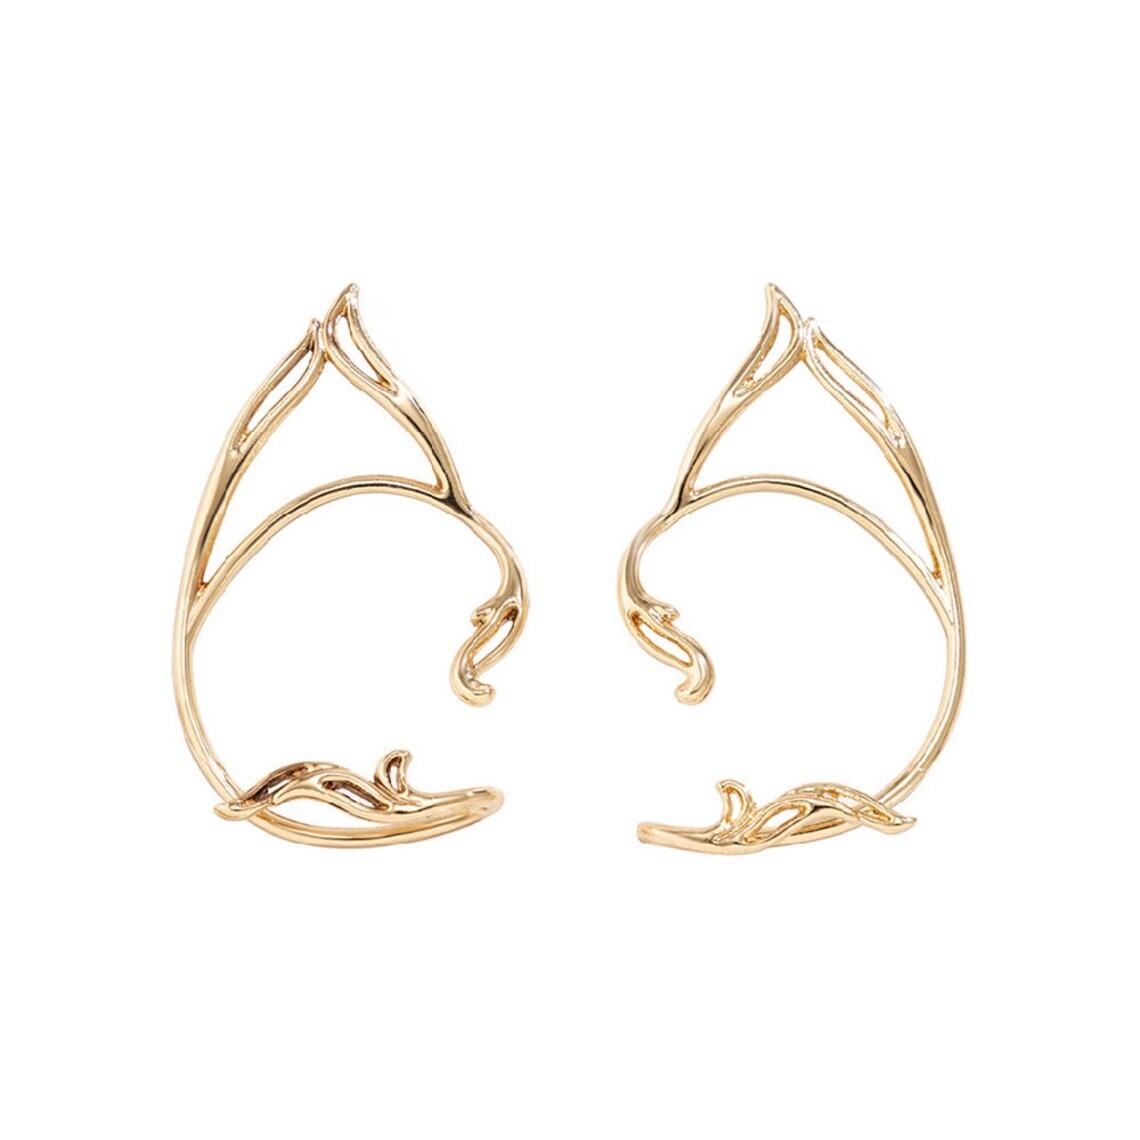 Elf studs/earrings -A pair